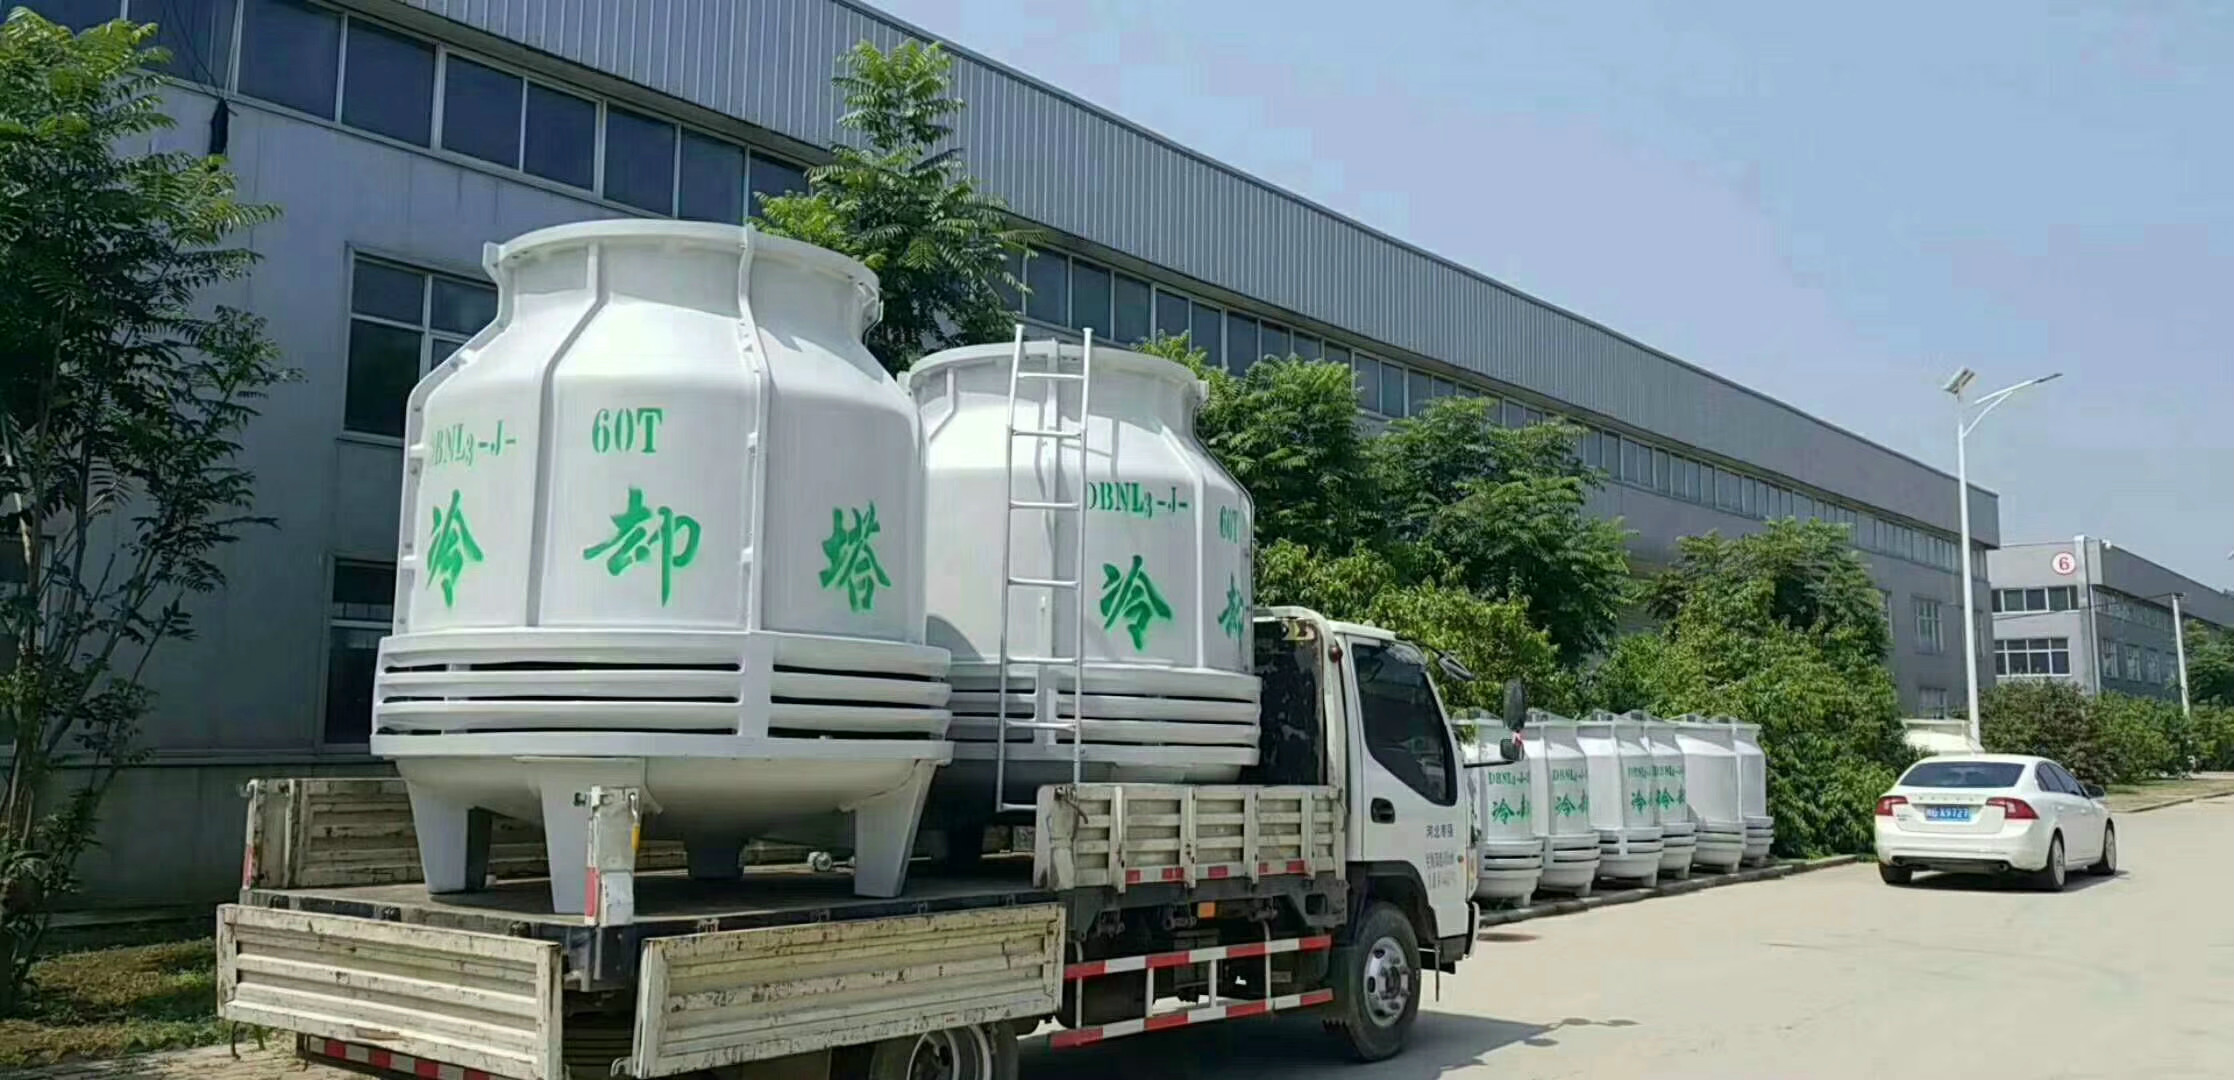 冷却塔价格北京冷却塔维修冷却塔更换填料天津冷却塔维修厂家